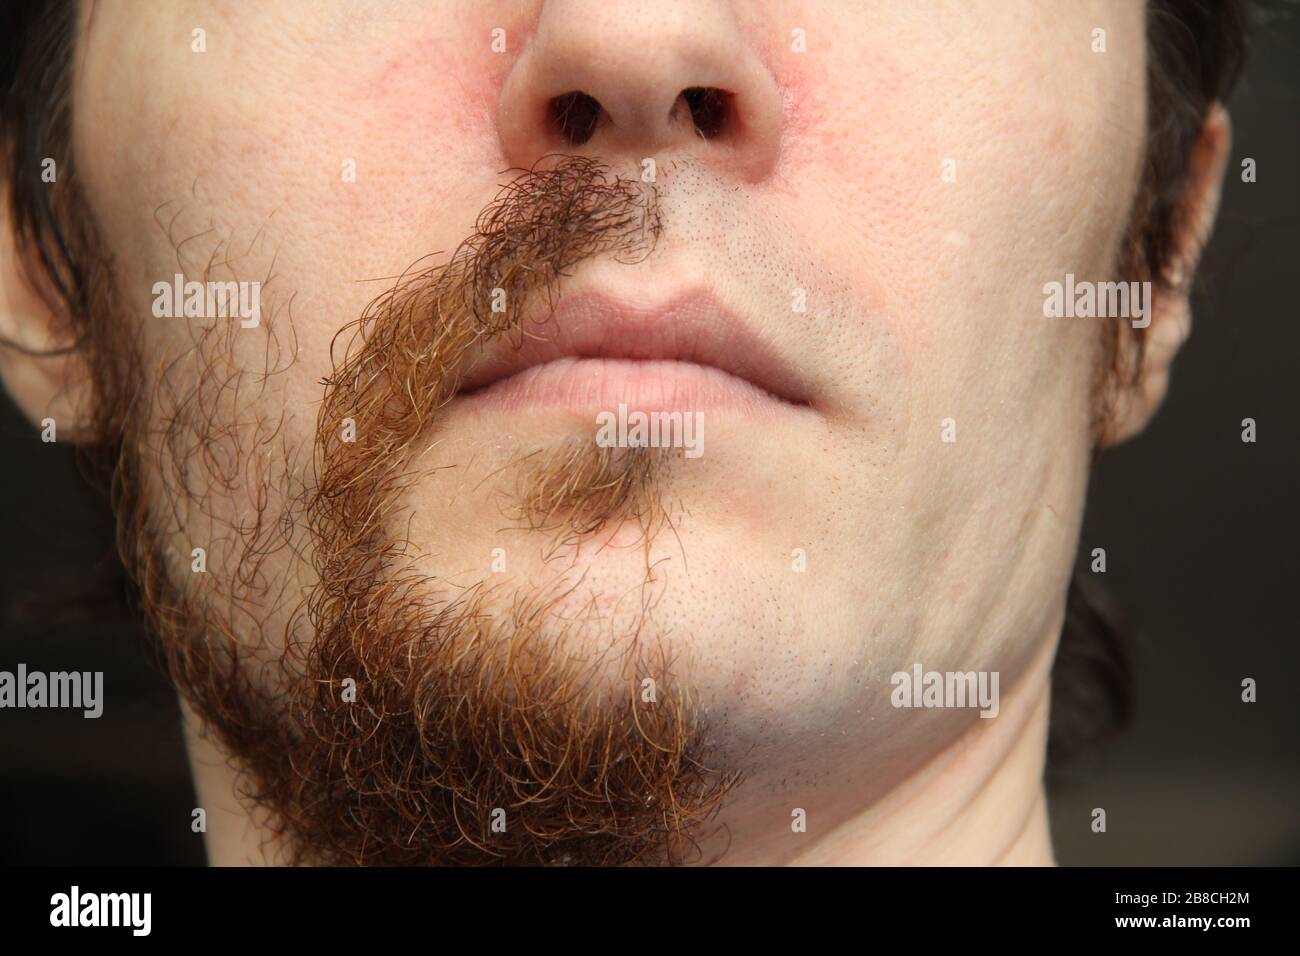 La partie inférieure de la face d'un homme blanc. La moitié du visage est rasée, l'autre moitié avec une barbe et une moustache Banque D'Images